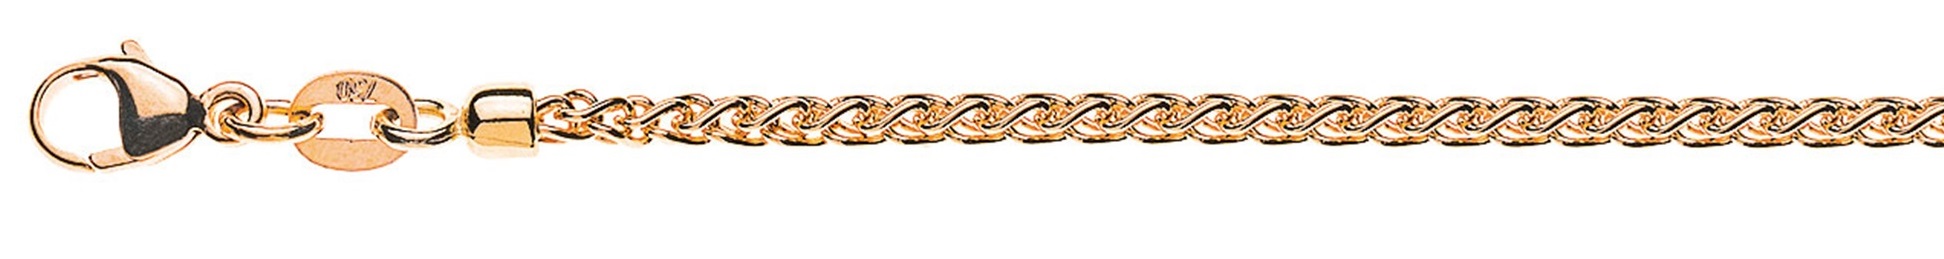 AURONOS Prestige Necklace rose gold 18K cable chain 45cm 2.15mm